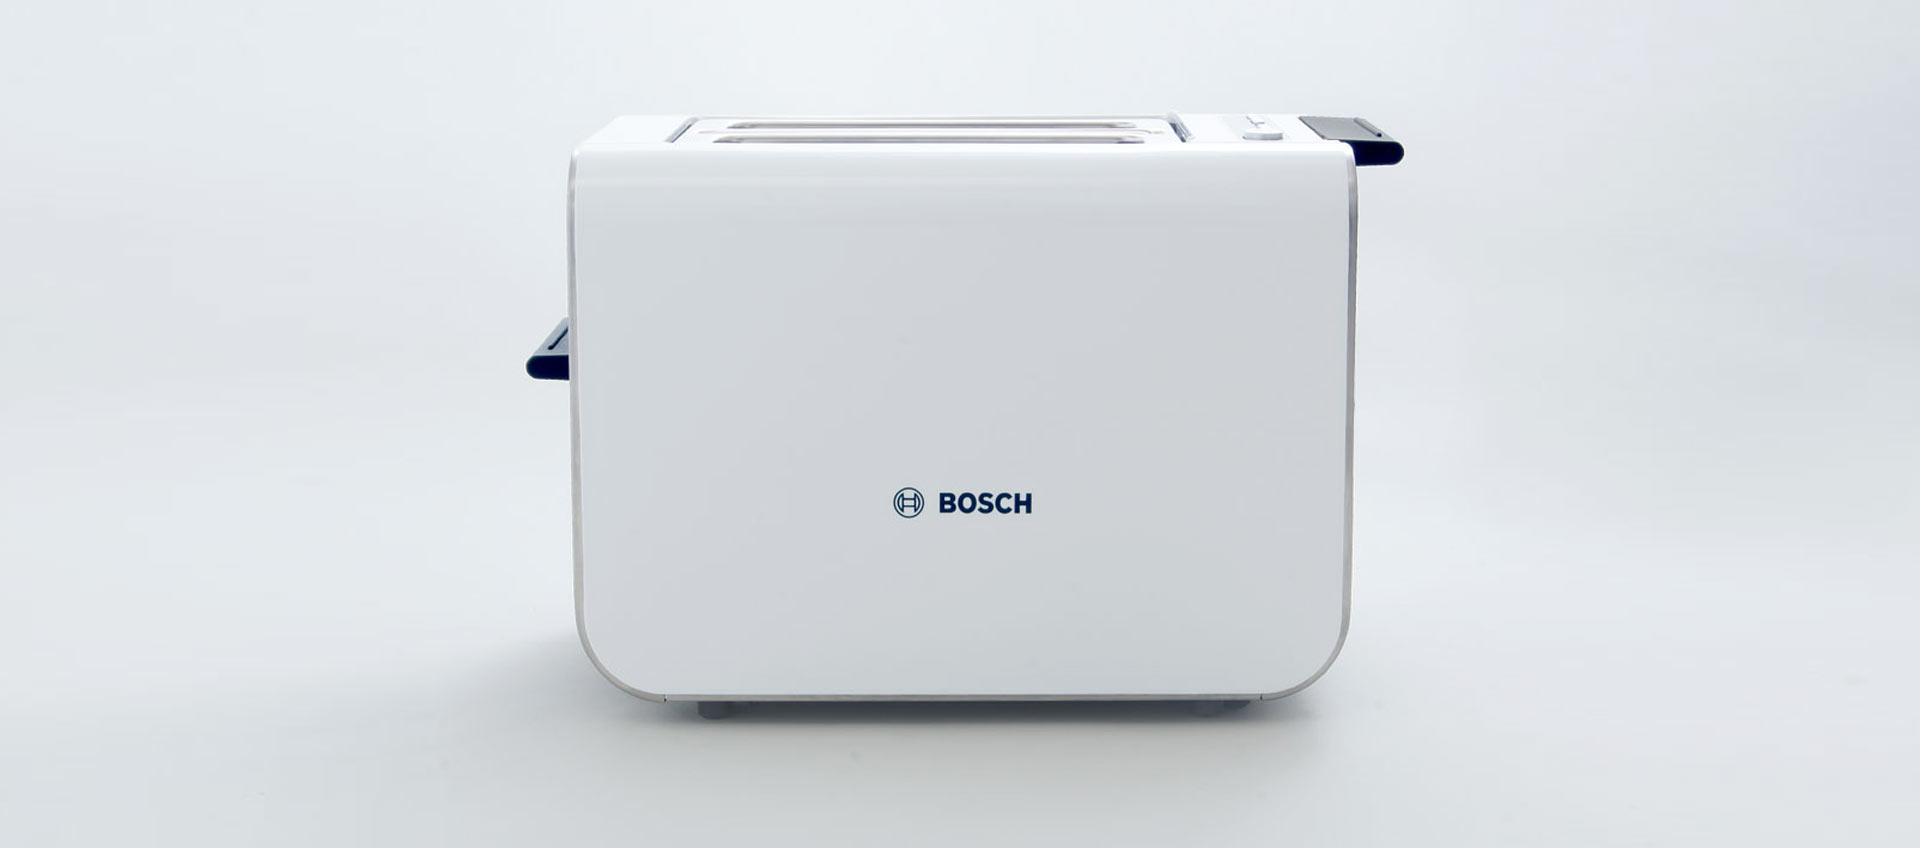 Industriedesigner daniels + erdwiens Toaster TAT-8 für Bosch Siemens Hausgeräte